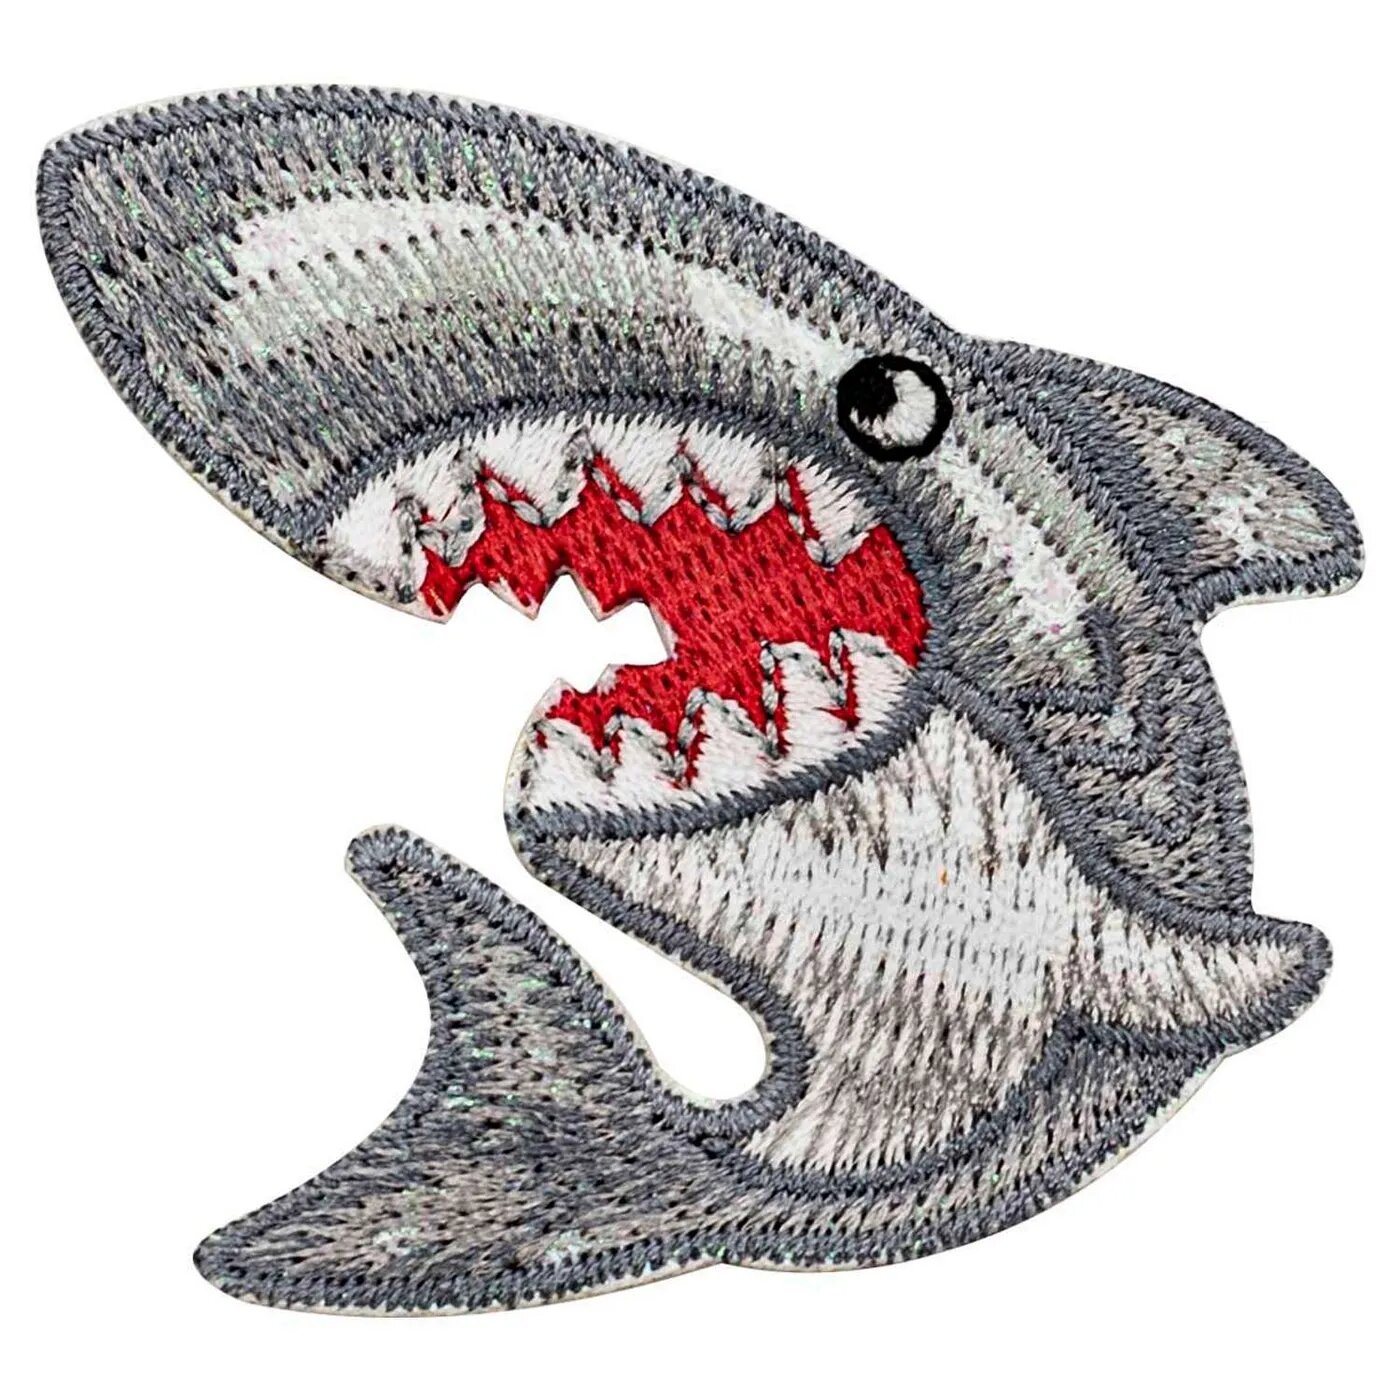 Термоаппликация Hobby Pro нашивка Зубастая акула 6.2х5 см для ремонта и украшения одежды